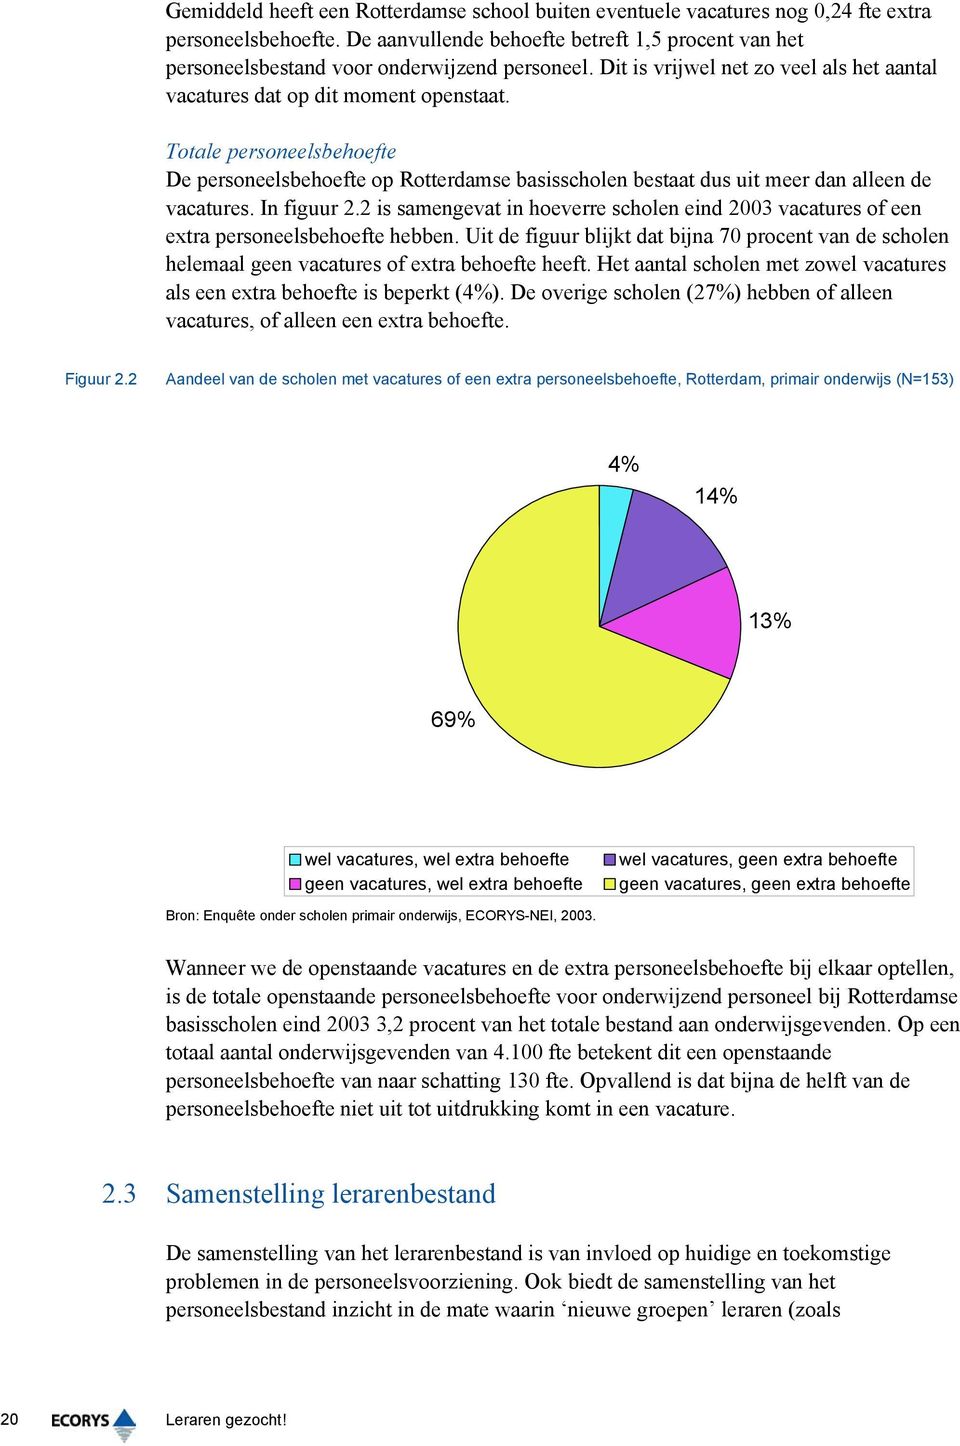 Totale personeelsbehoefte De personeelsbehoefte op Rotterdamse basisscholen bestaat dus uit meer dan alleen de vacatures. In figuur 2.